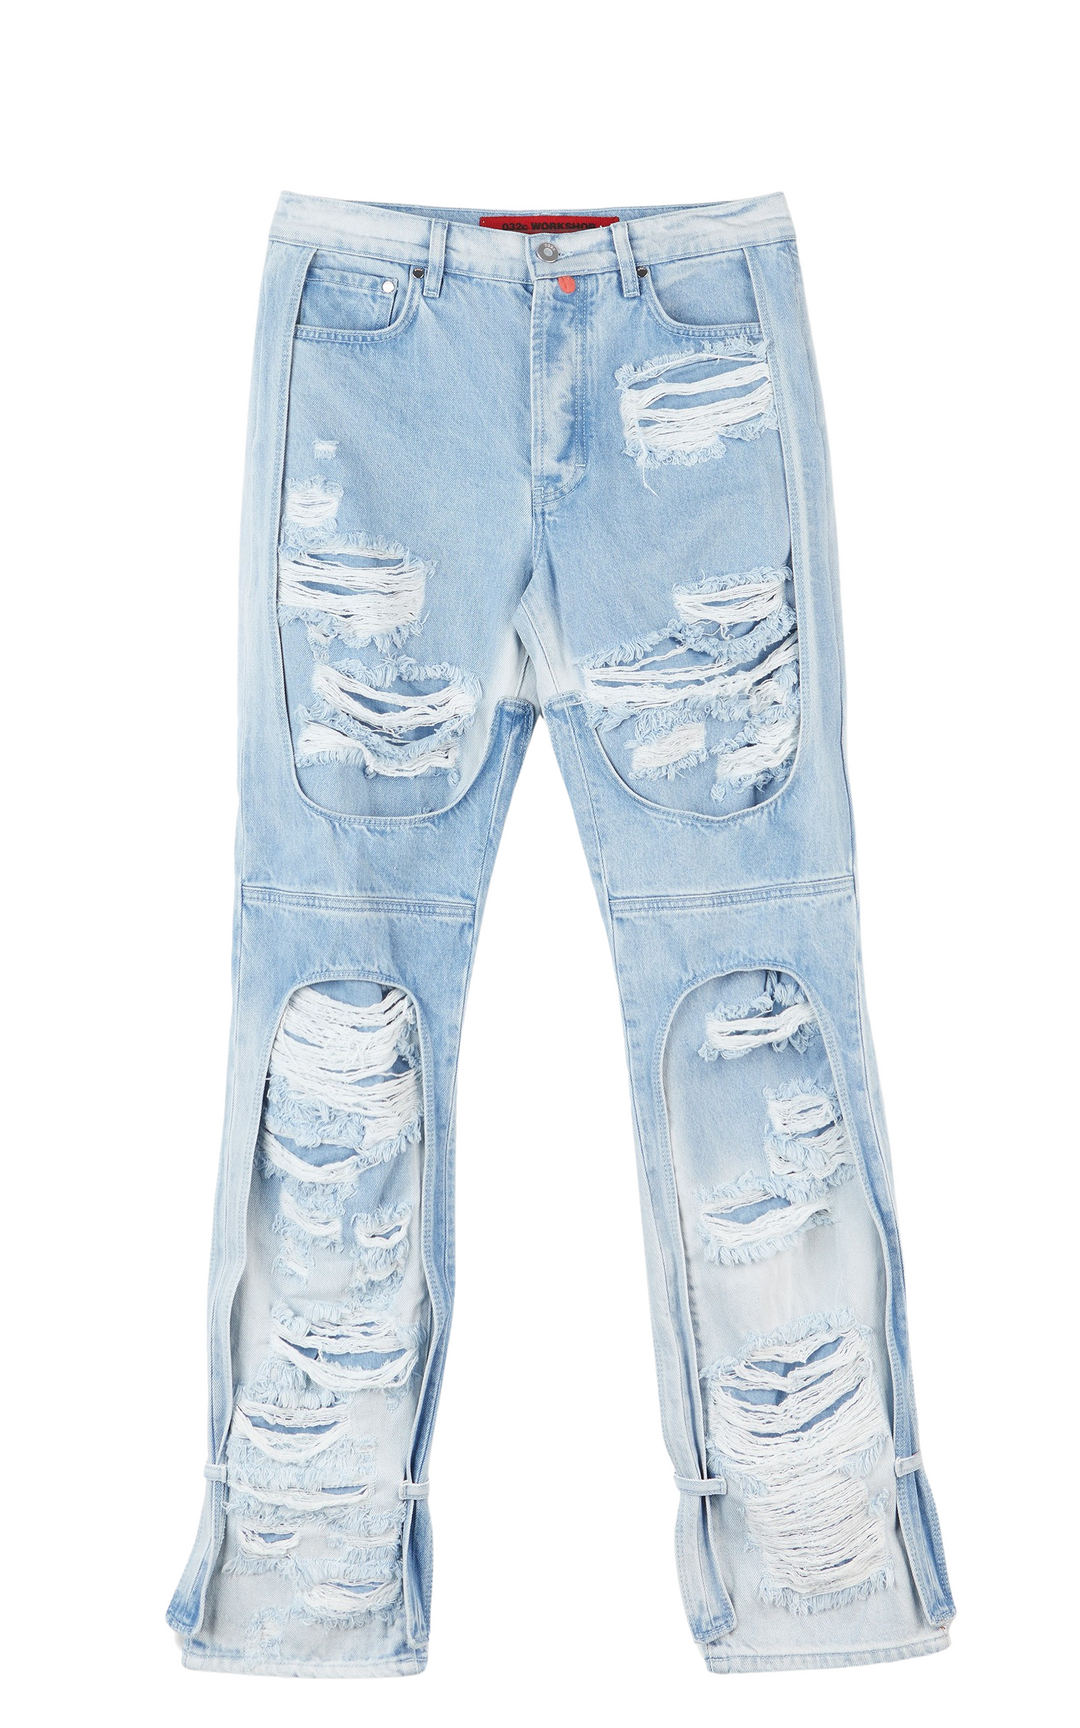 032c 'Destroyed' Blue Jeans